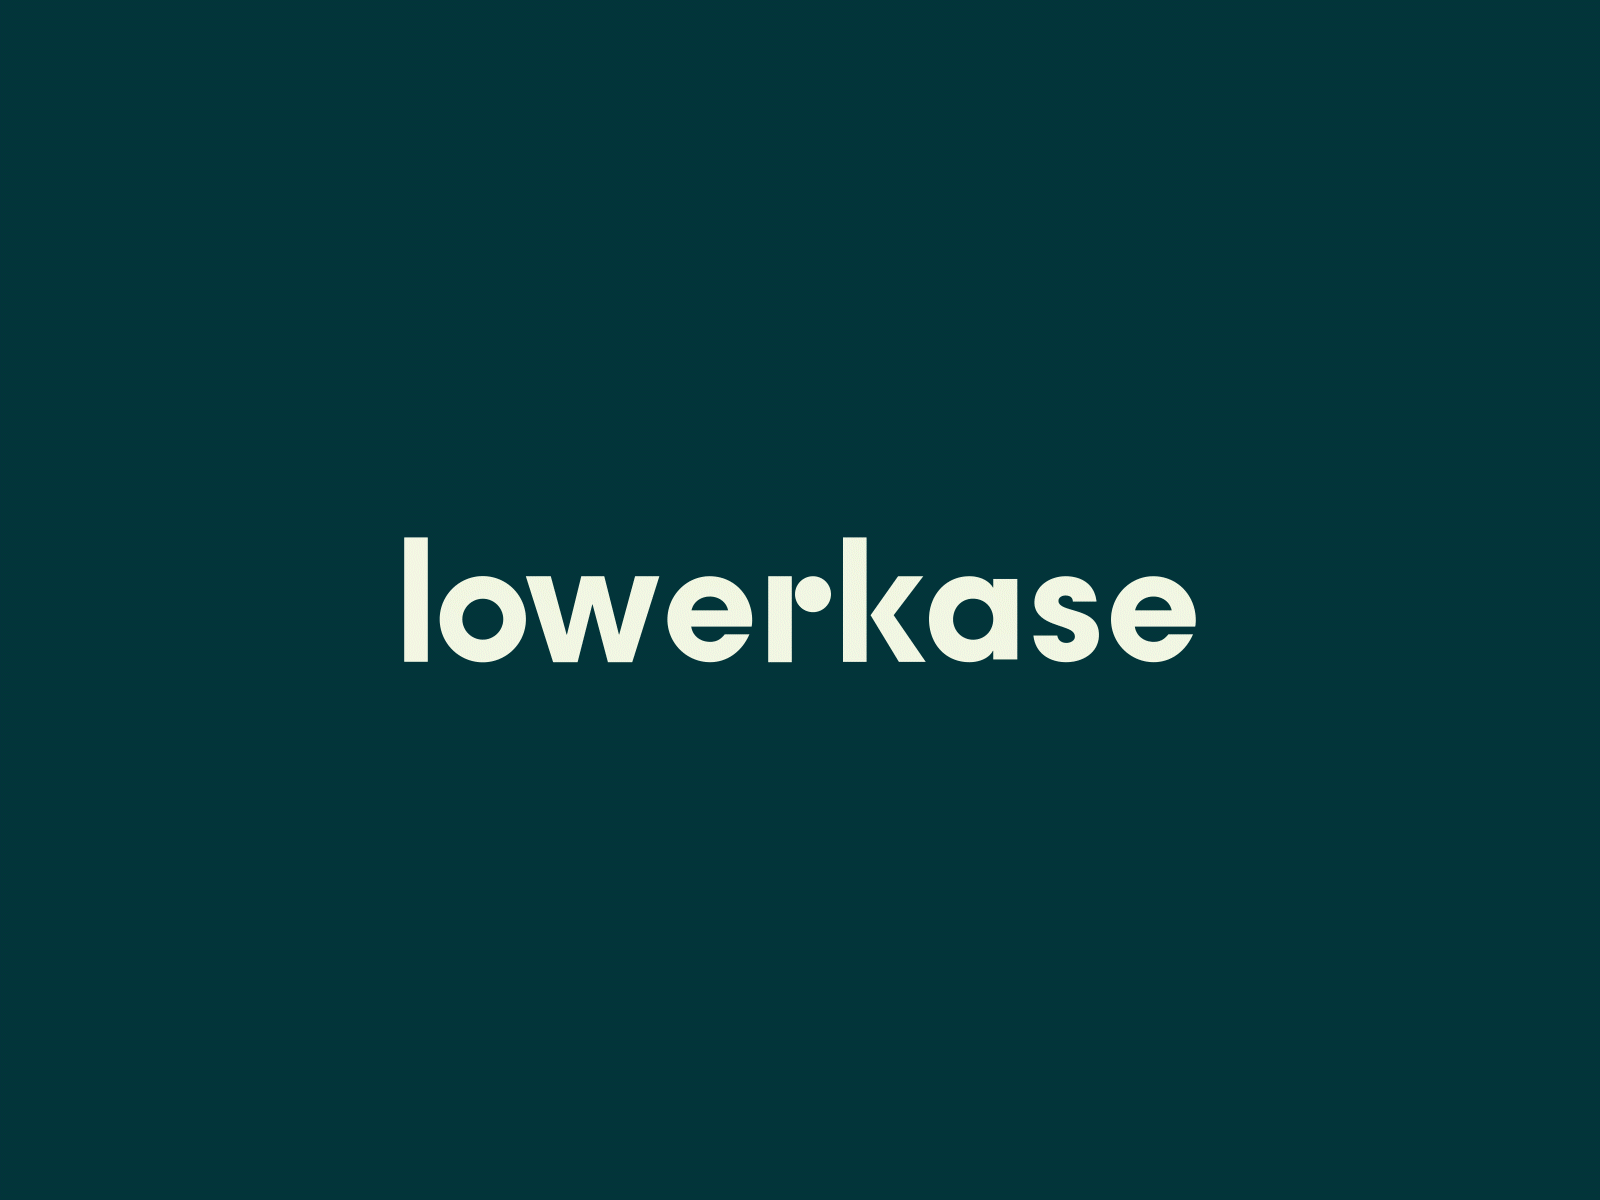 Lowerkase